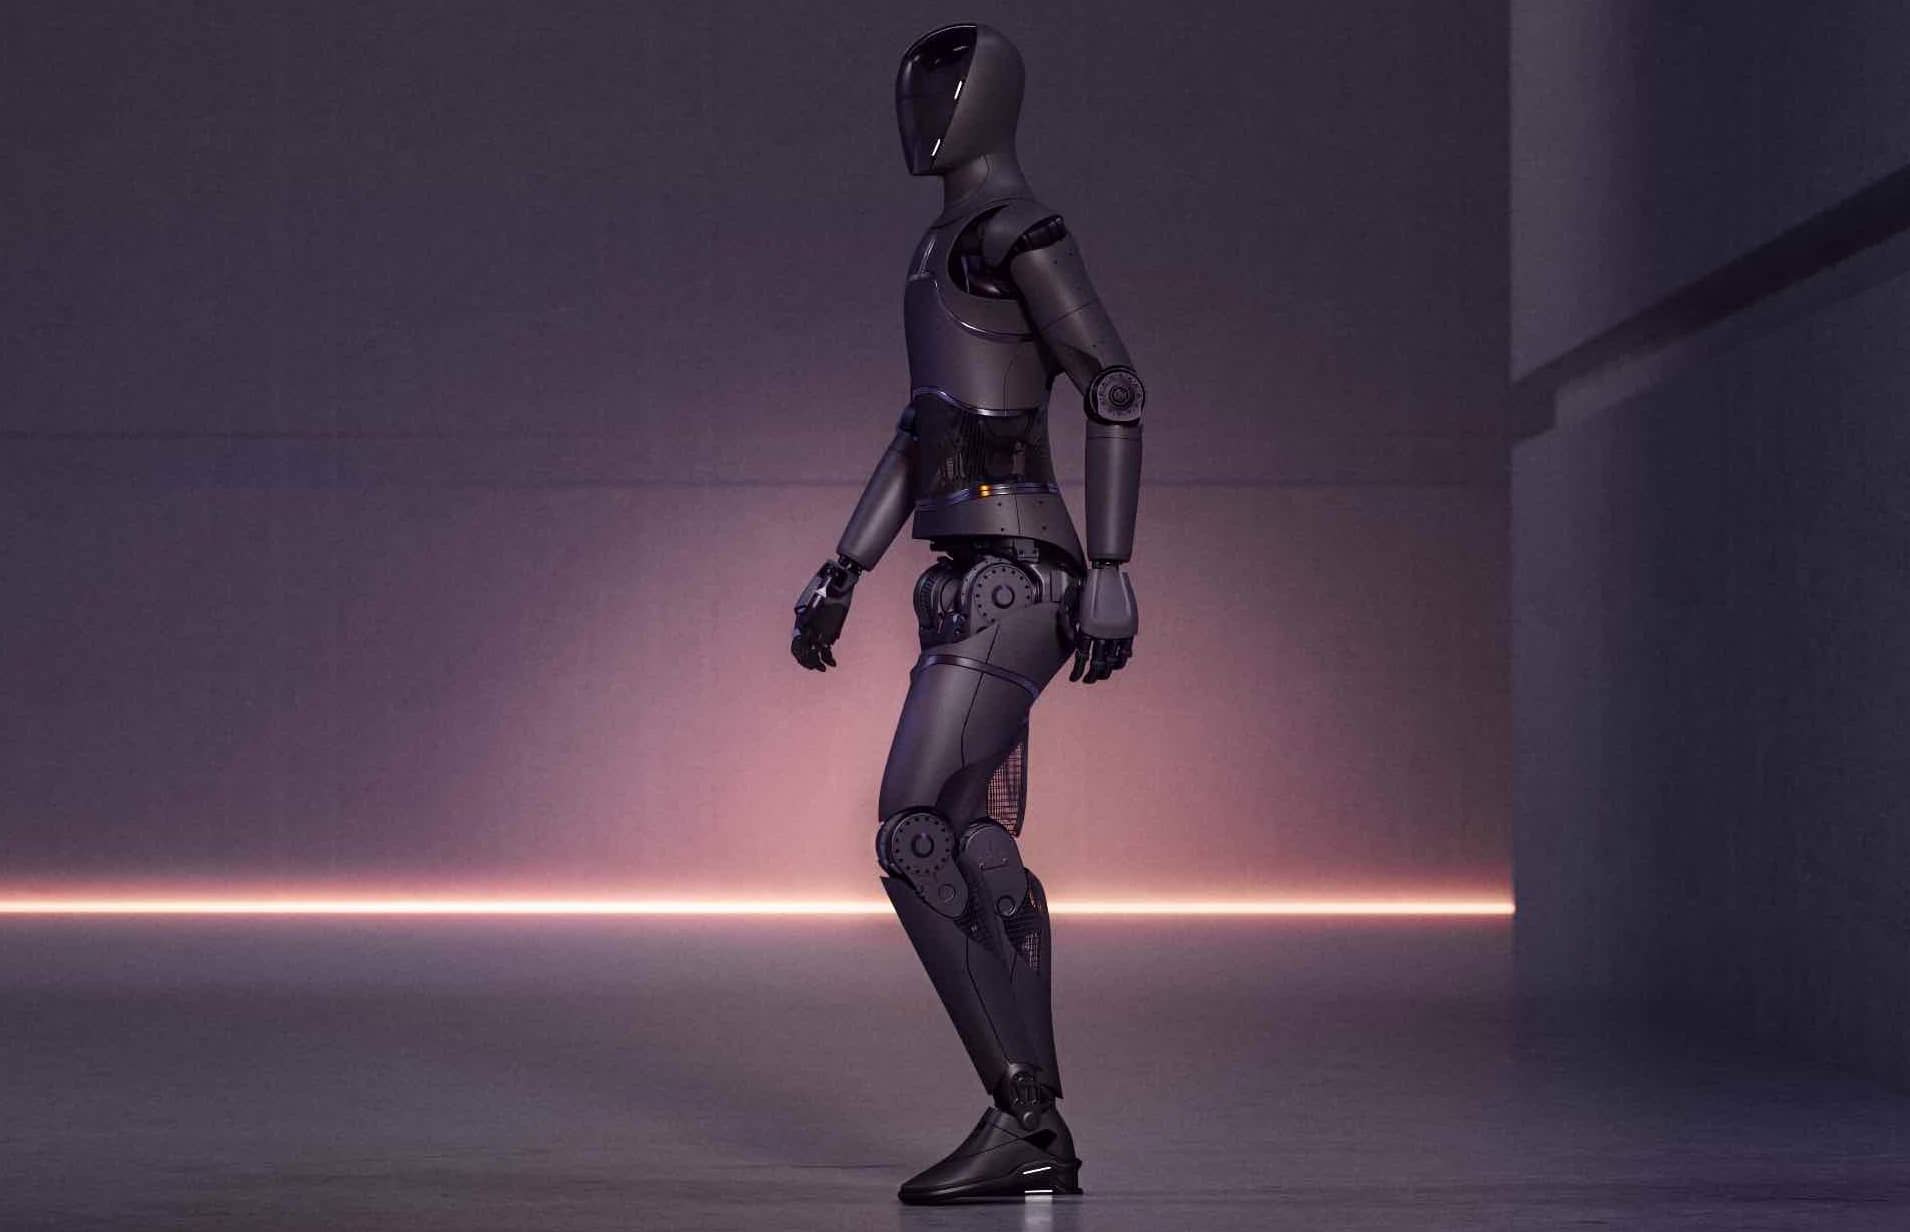 Представлен человекоподобный робот Figure 01, работающий на базе ИИ